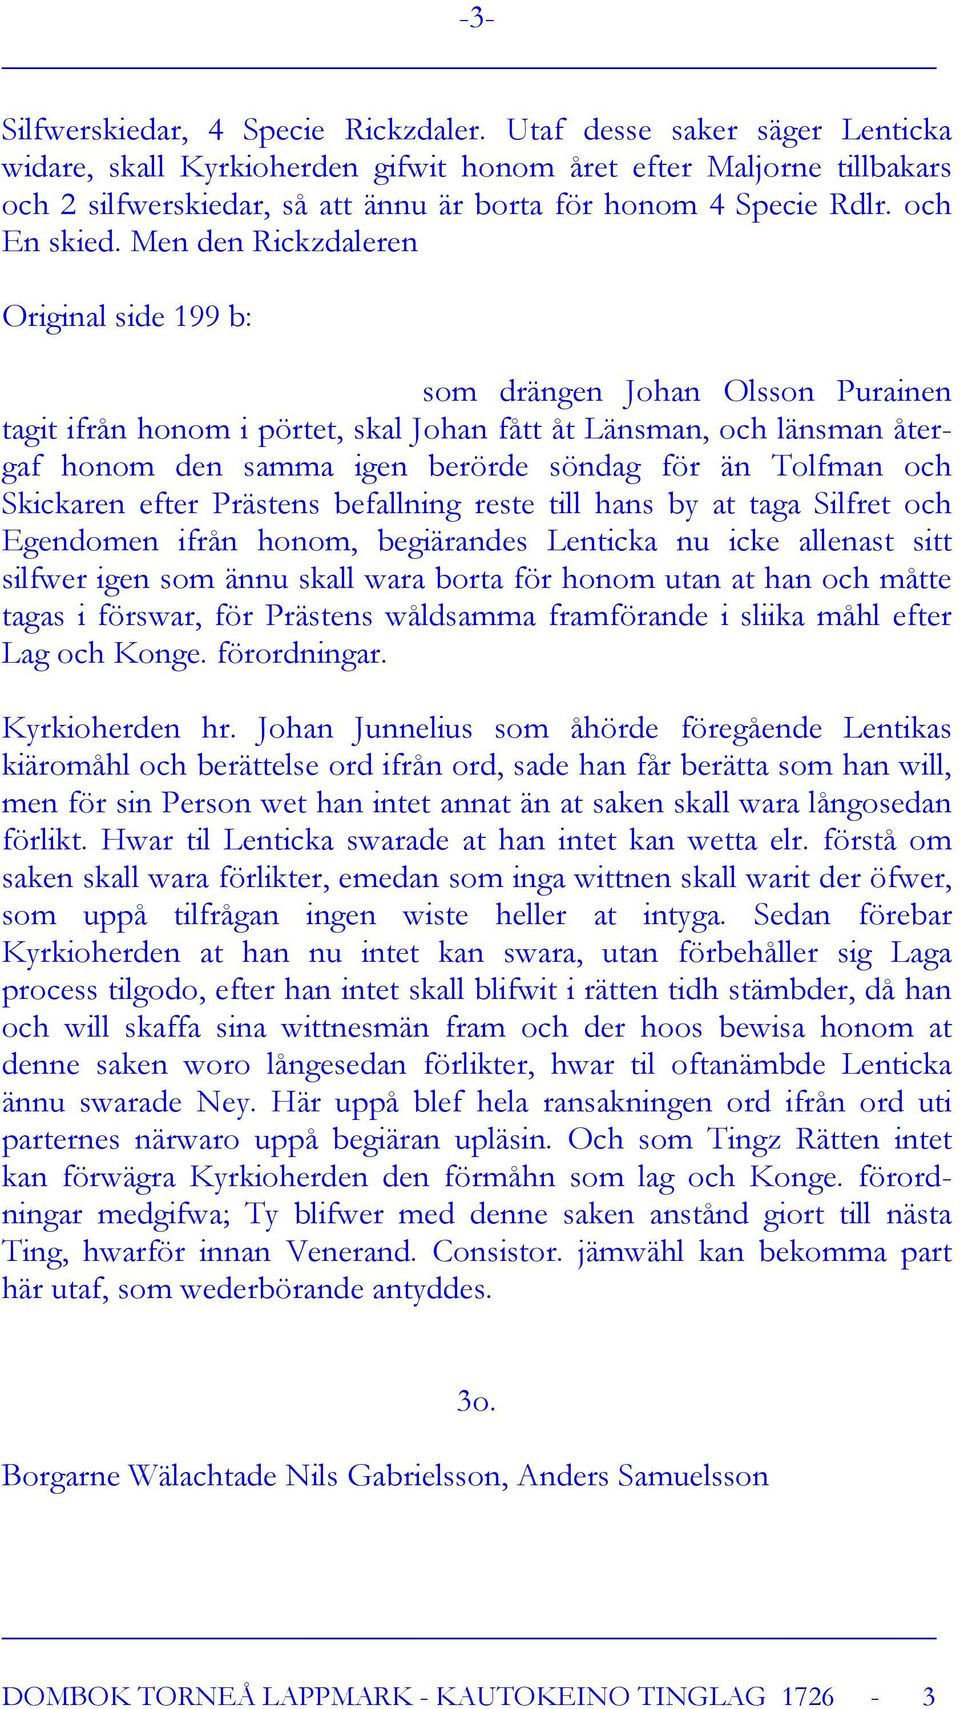 Men den Rickzdaleren Original side 199 b: som drängen Johan Olsson Purainen tagit ifrån honom i pörtet, skal Johan fått åt Länsman, och länsman återgaf honom den samma igen berörde söndag för än